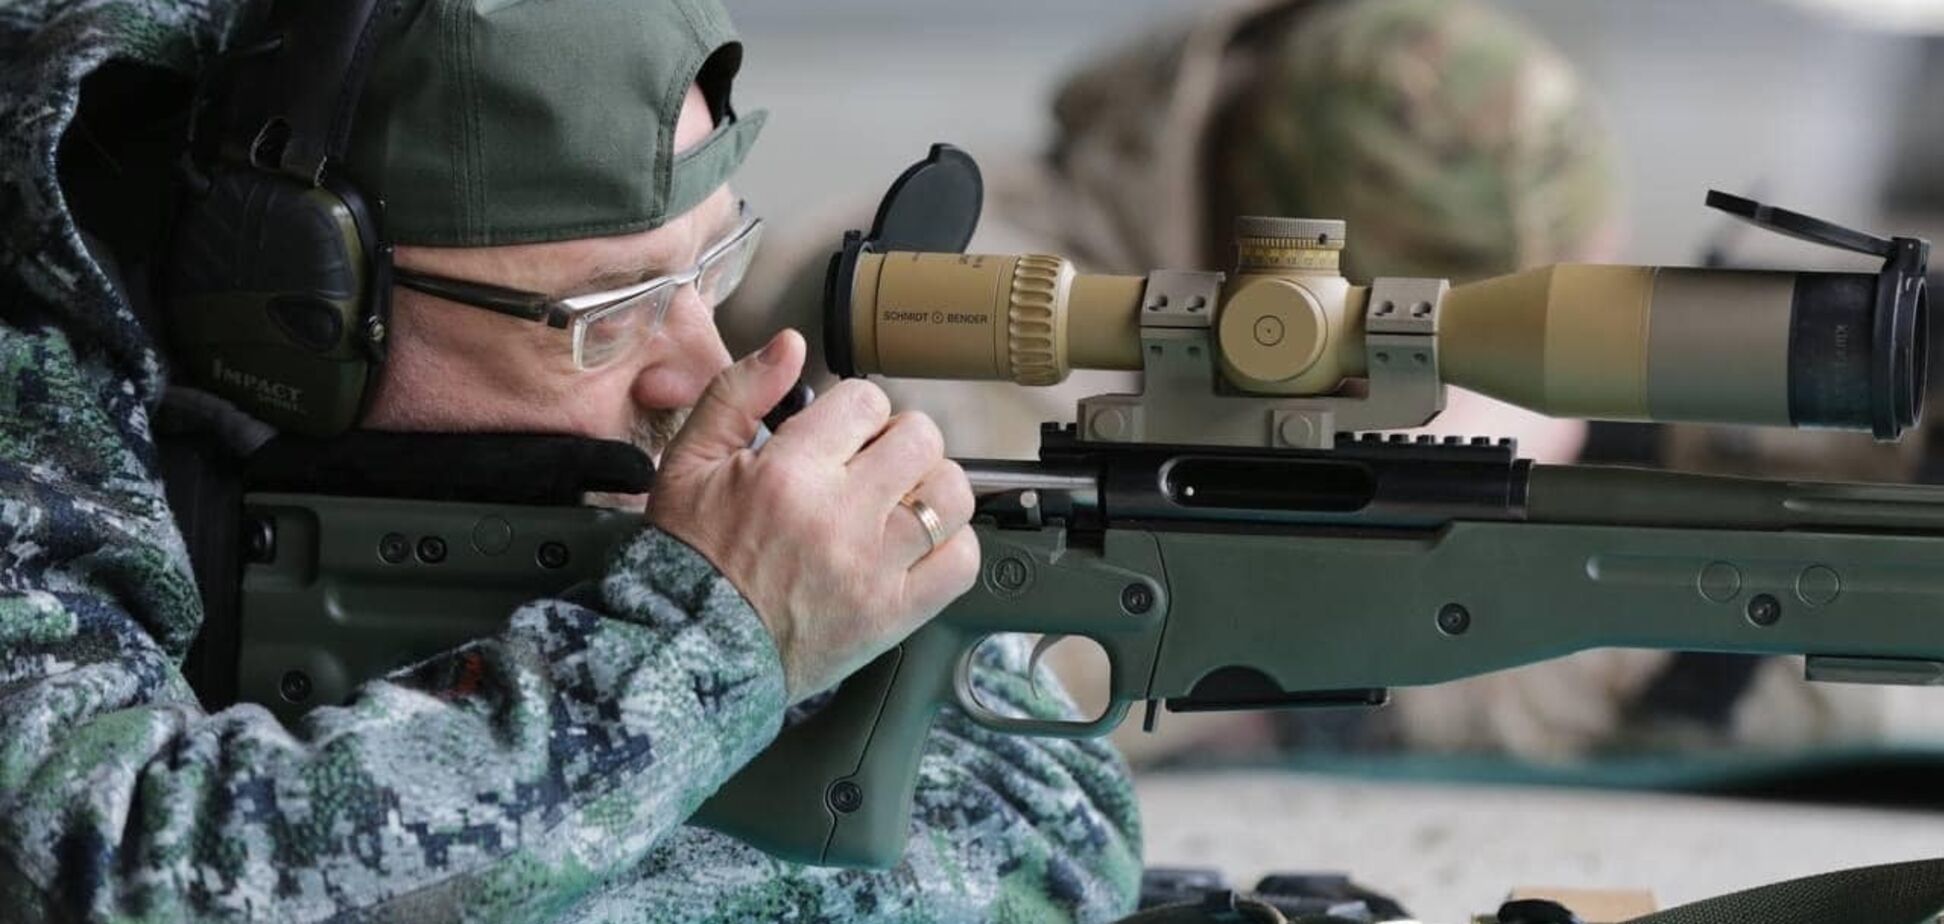 Оружие делает человека свободным: Украине необходима легализация оборота оружия